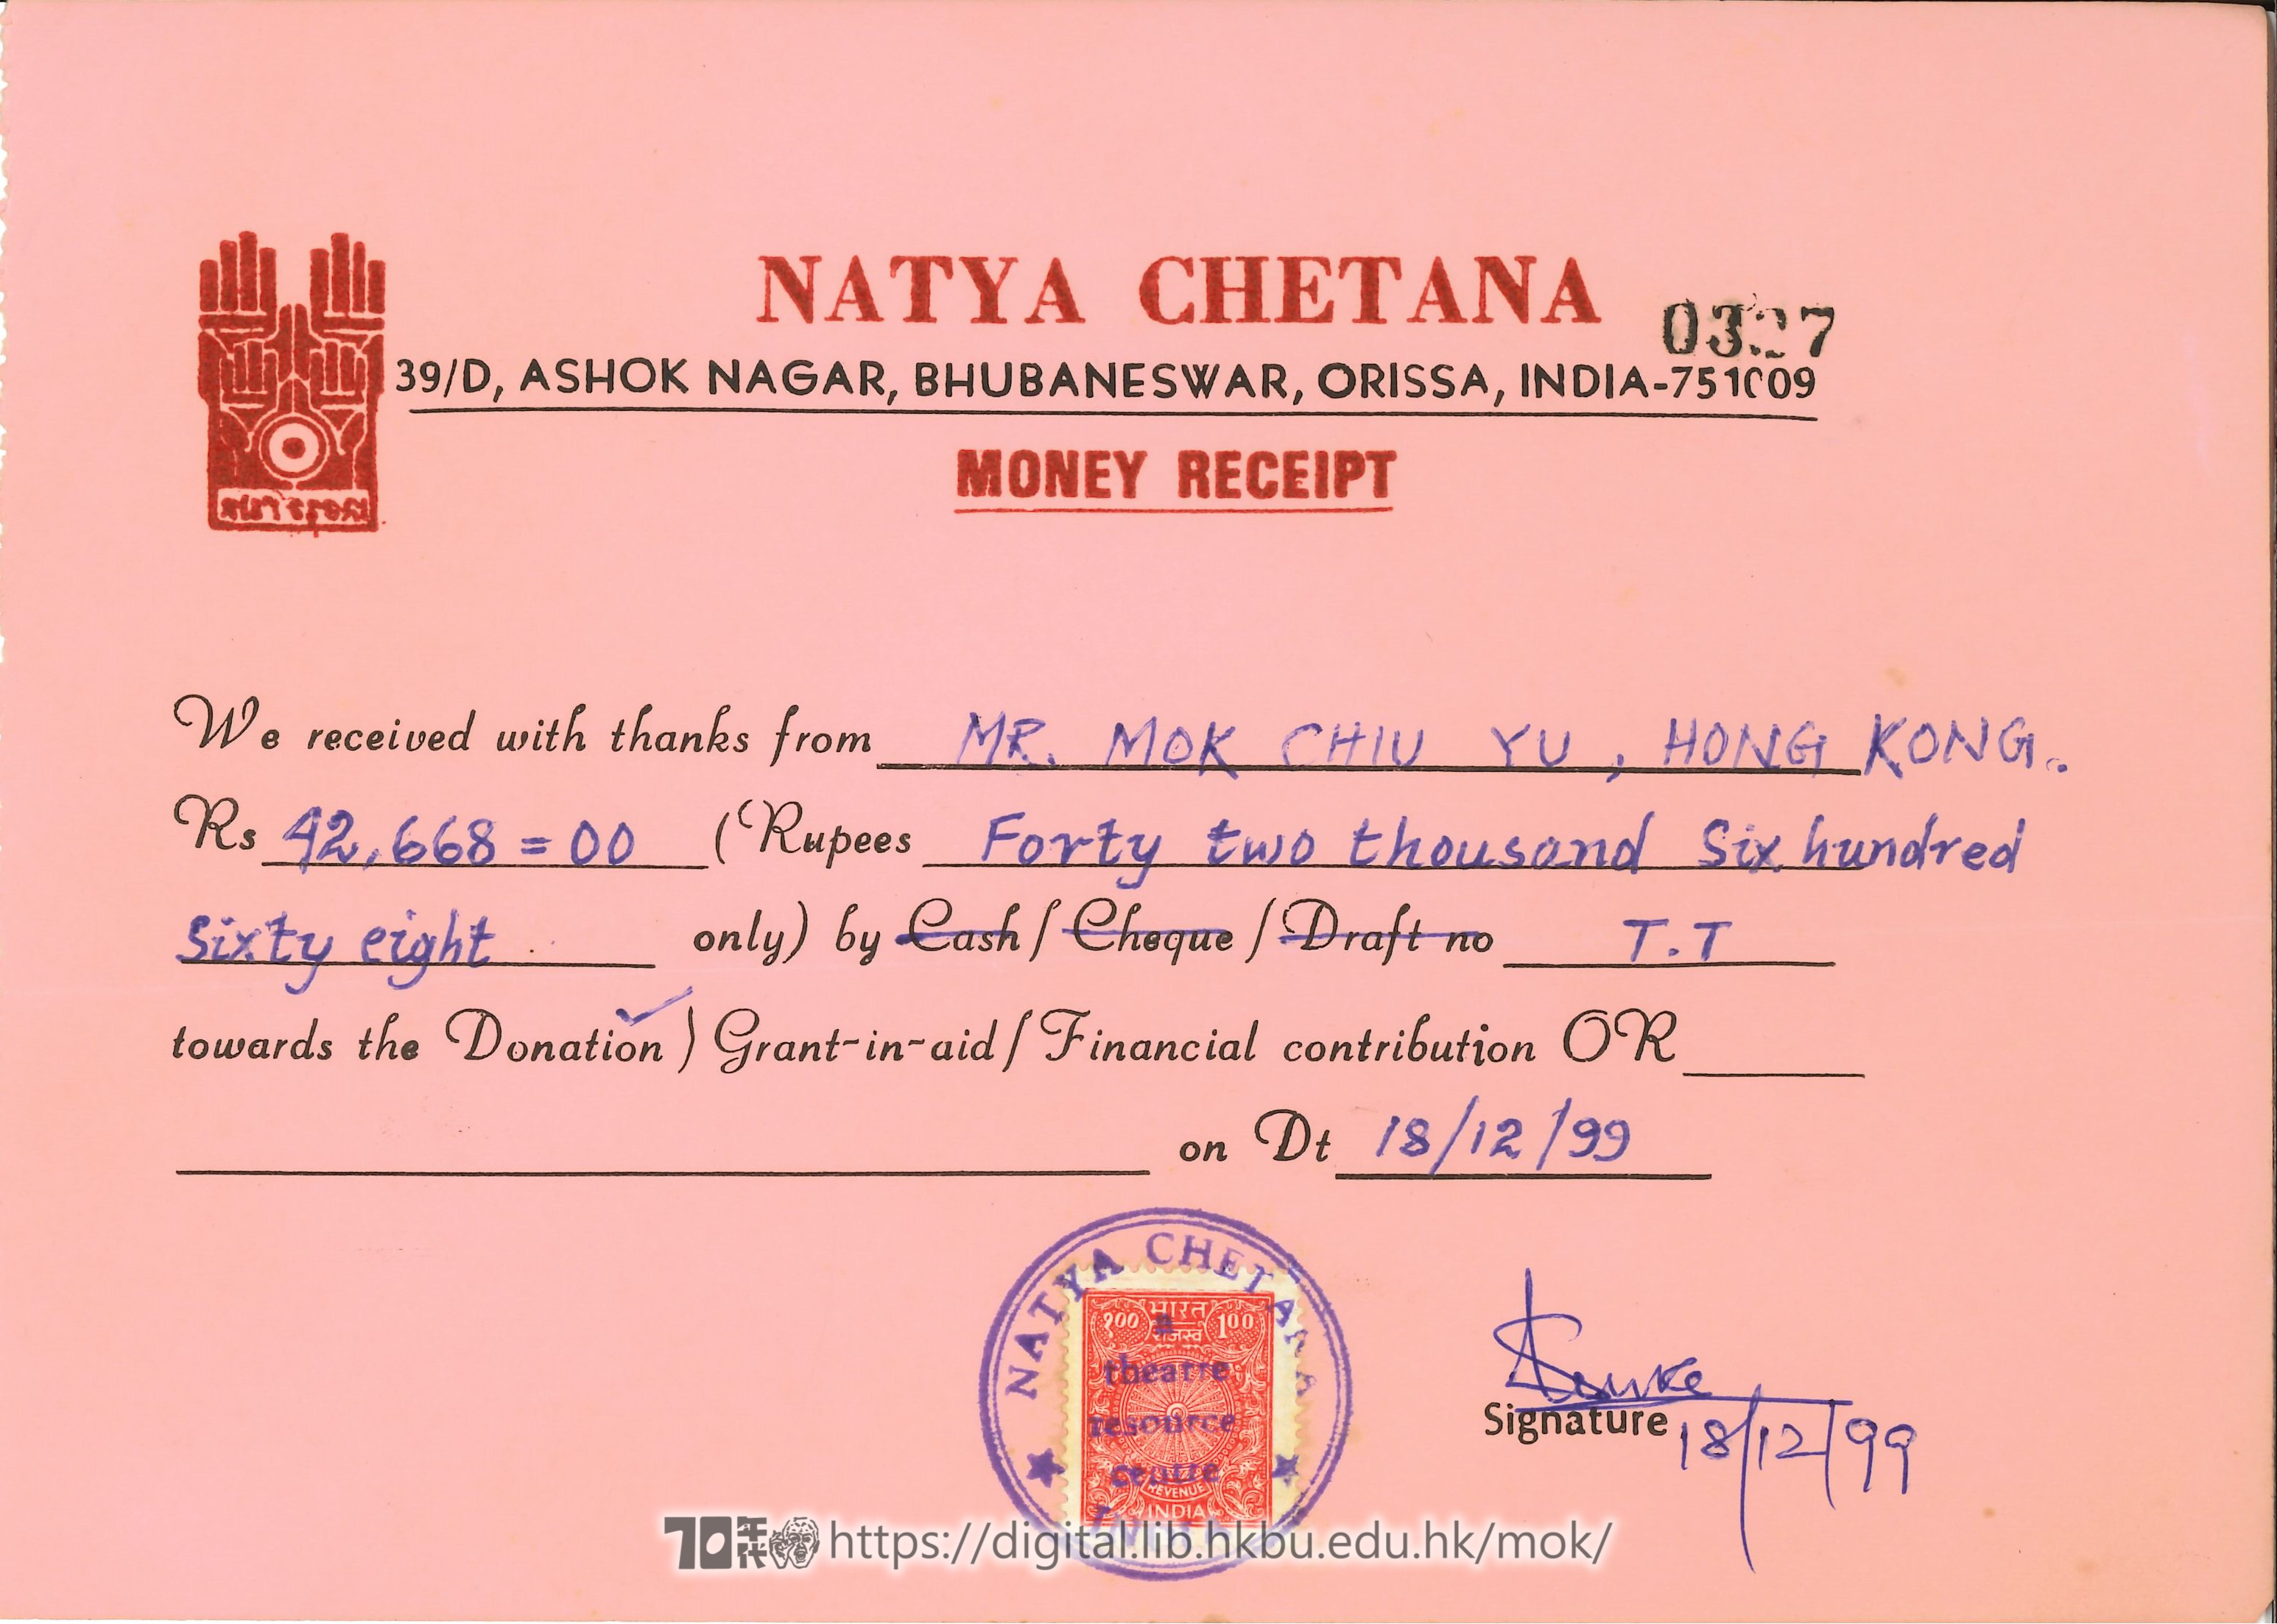   印度Natya Chetana總監Subodh Pattanaik來信及收據  